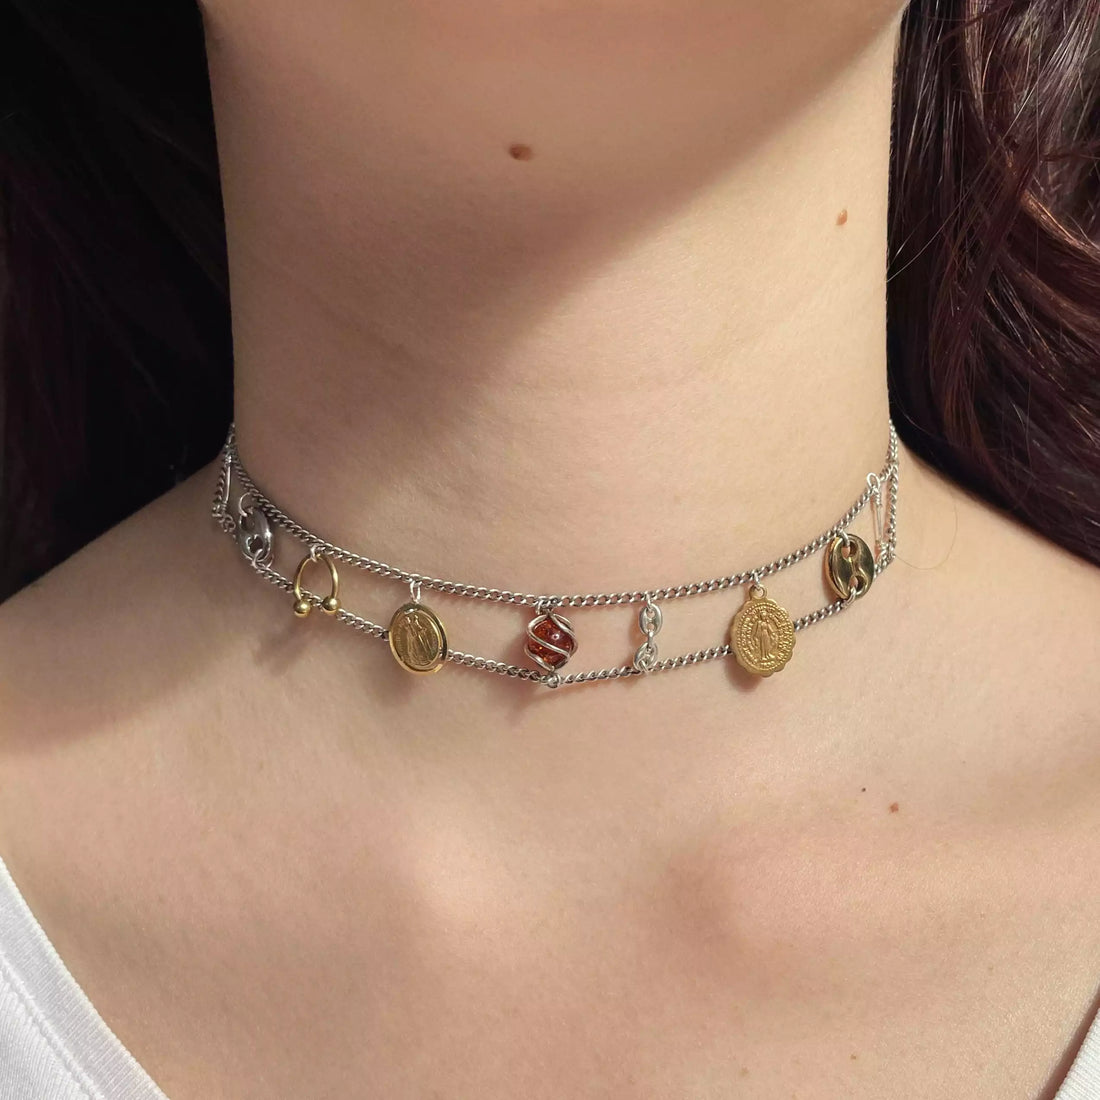 Le collier unique Tête d'Orange porté sur un cou. On voit les différents médaillons plaqués or, argent qui sont disposés entre deux chaînes fines en argent.